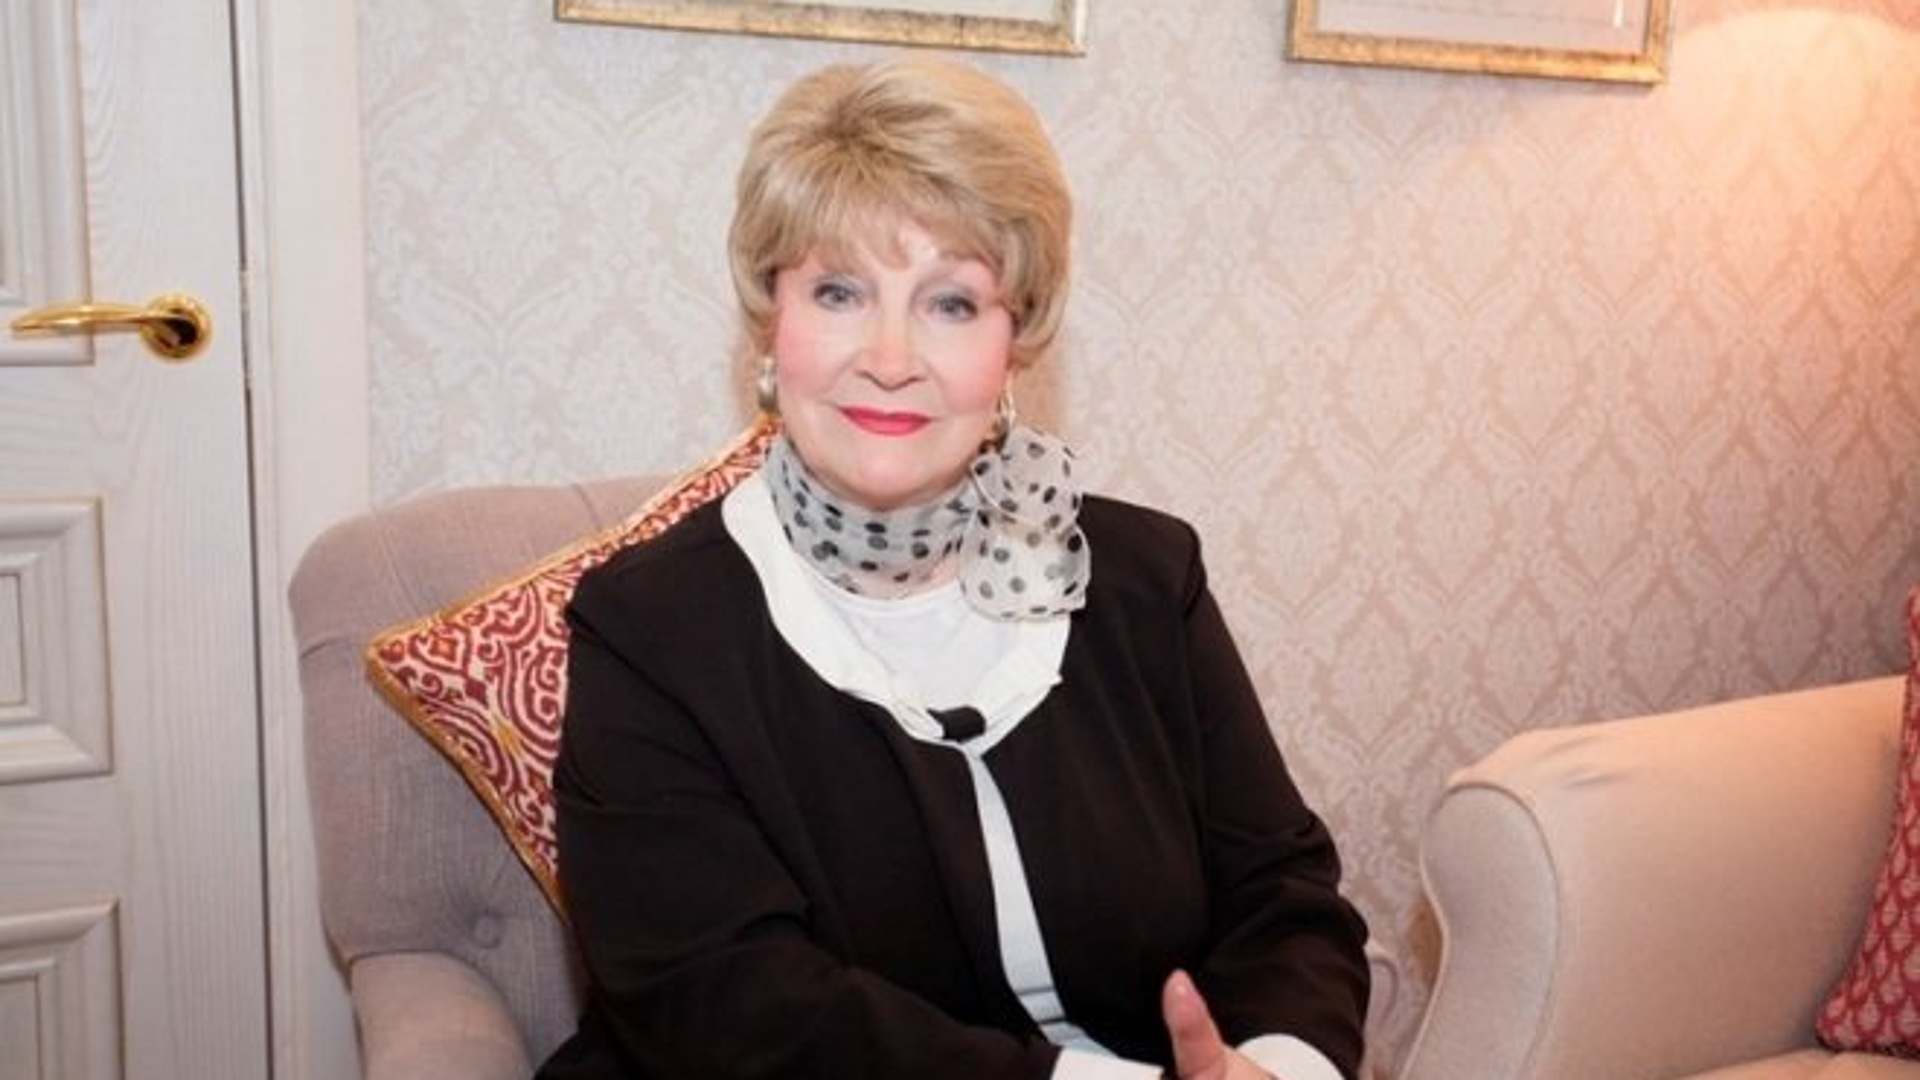 Людмила Хитяева